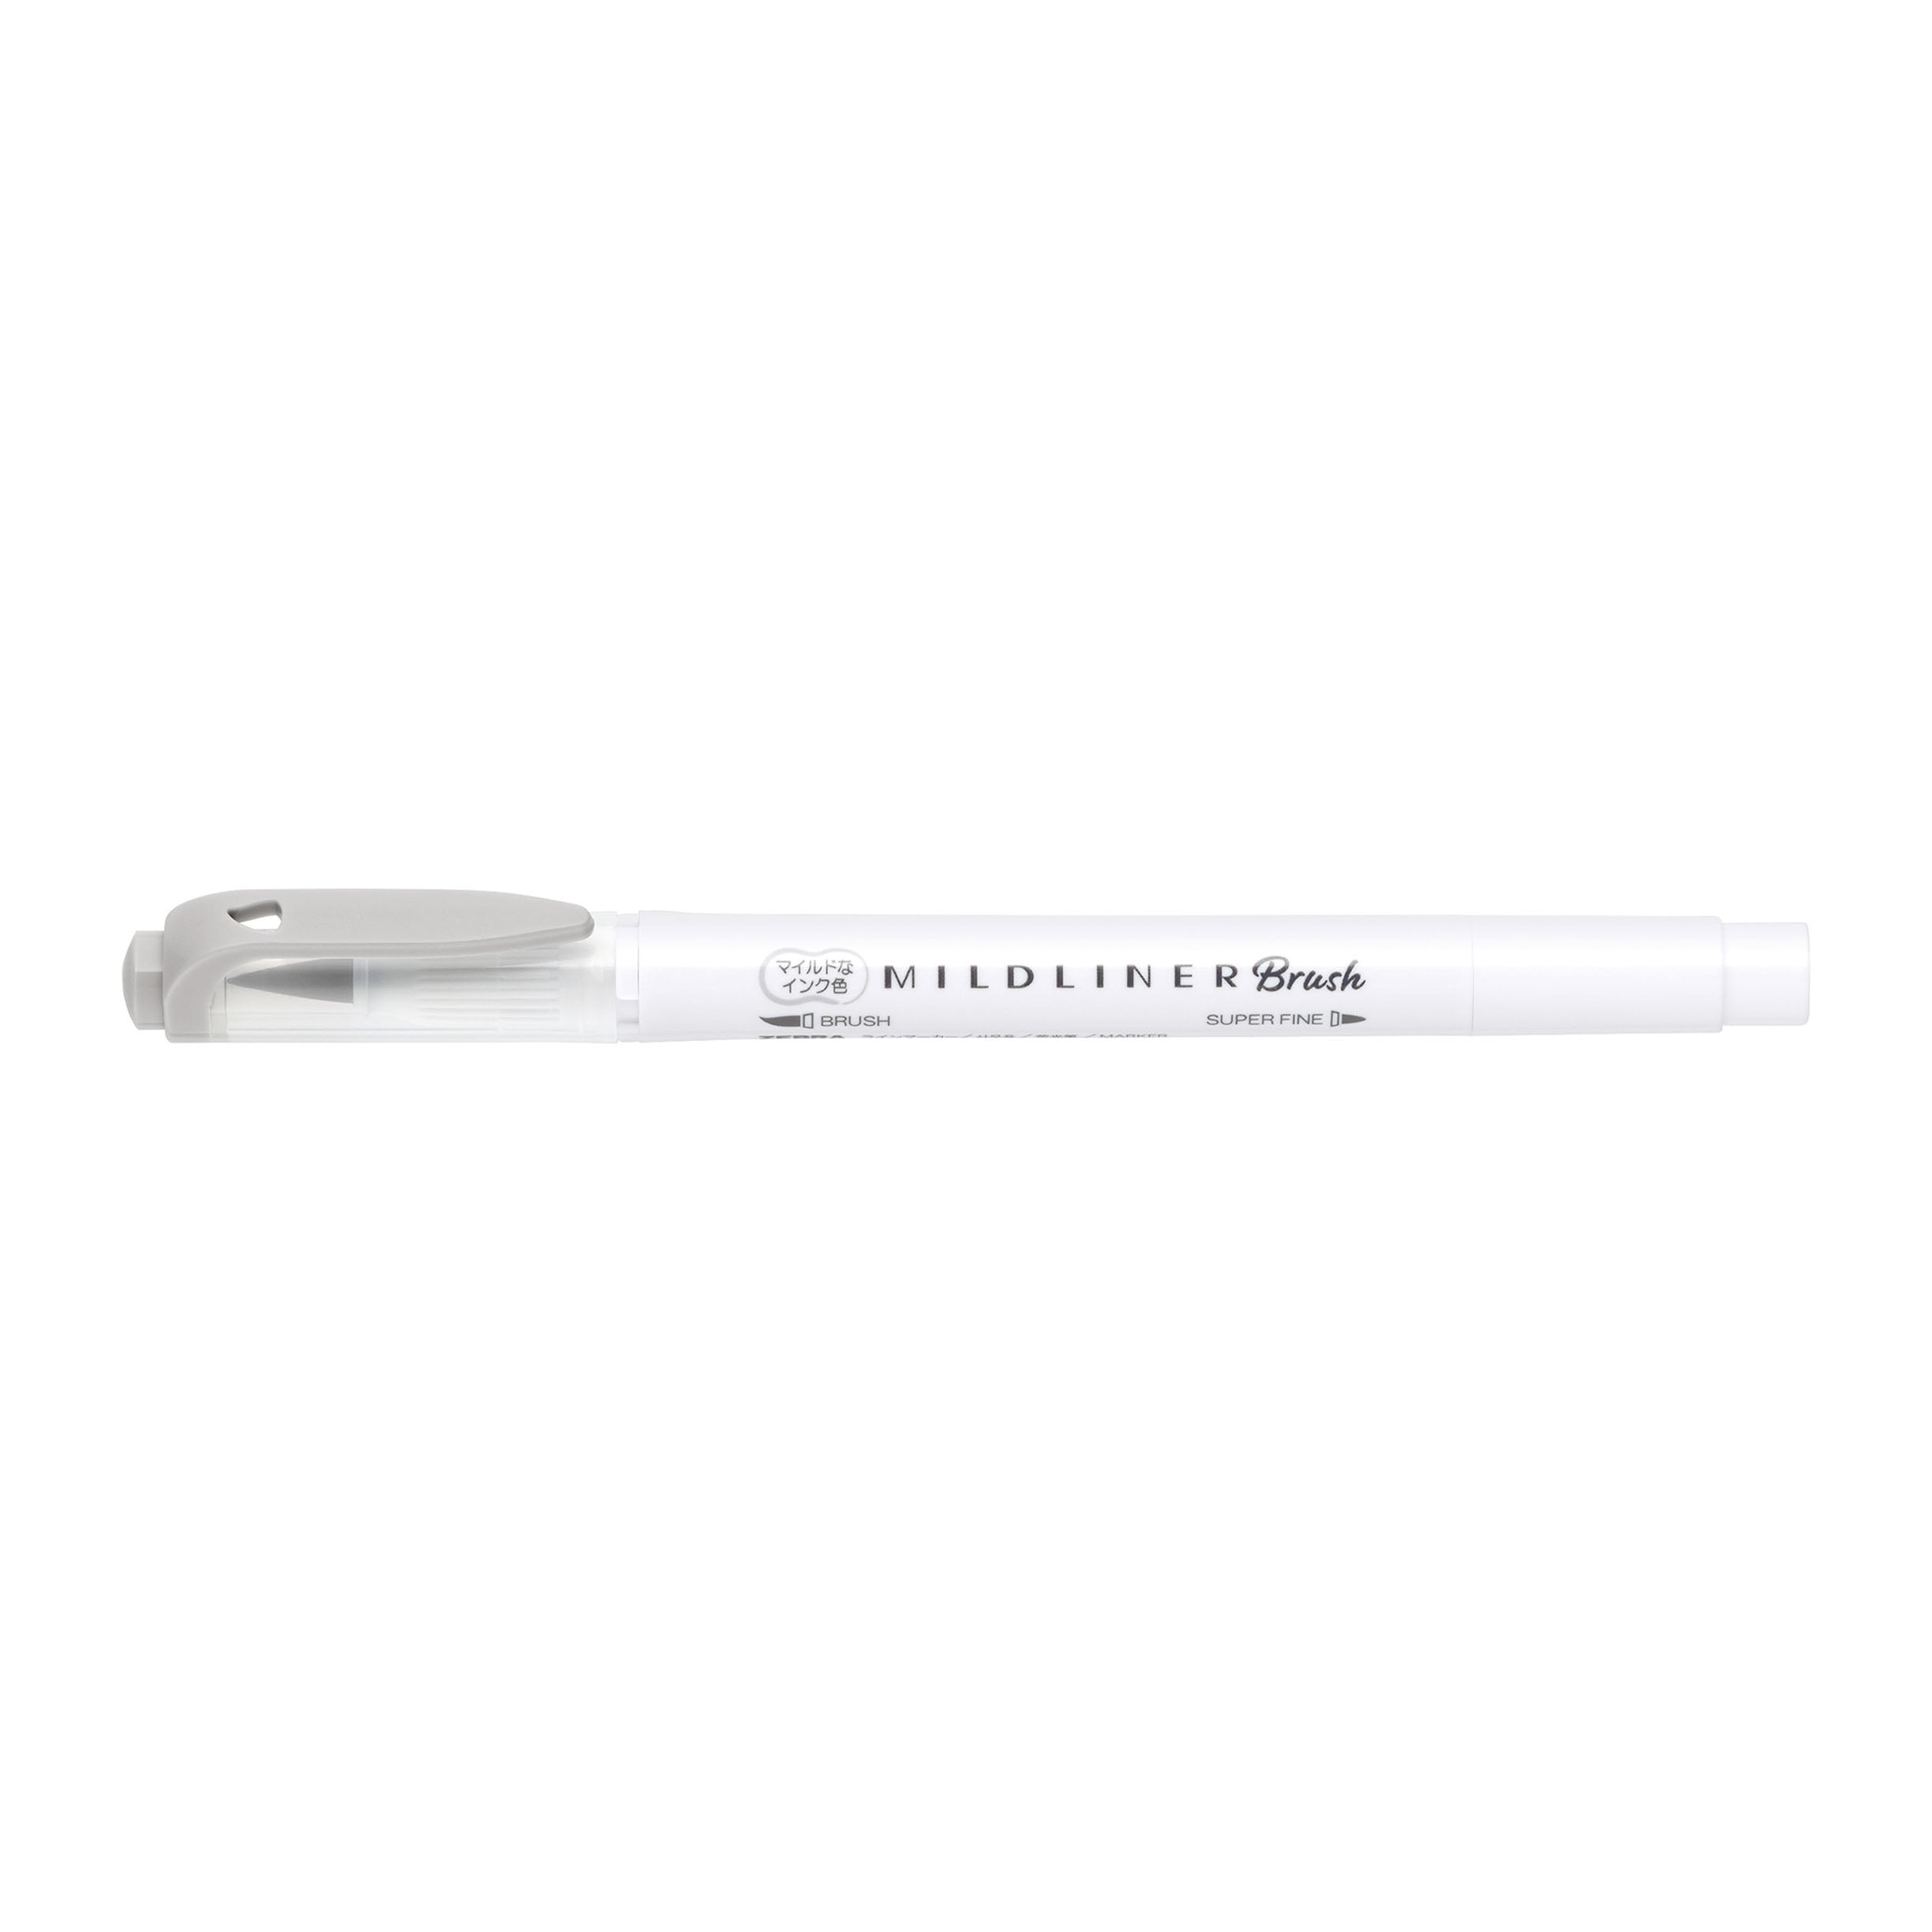 Zebra Mildliner Double-Ended Brush Pen